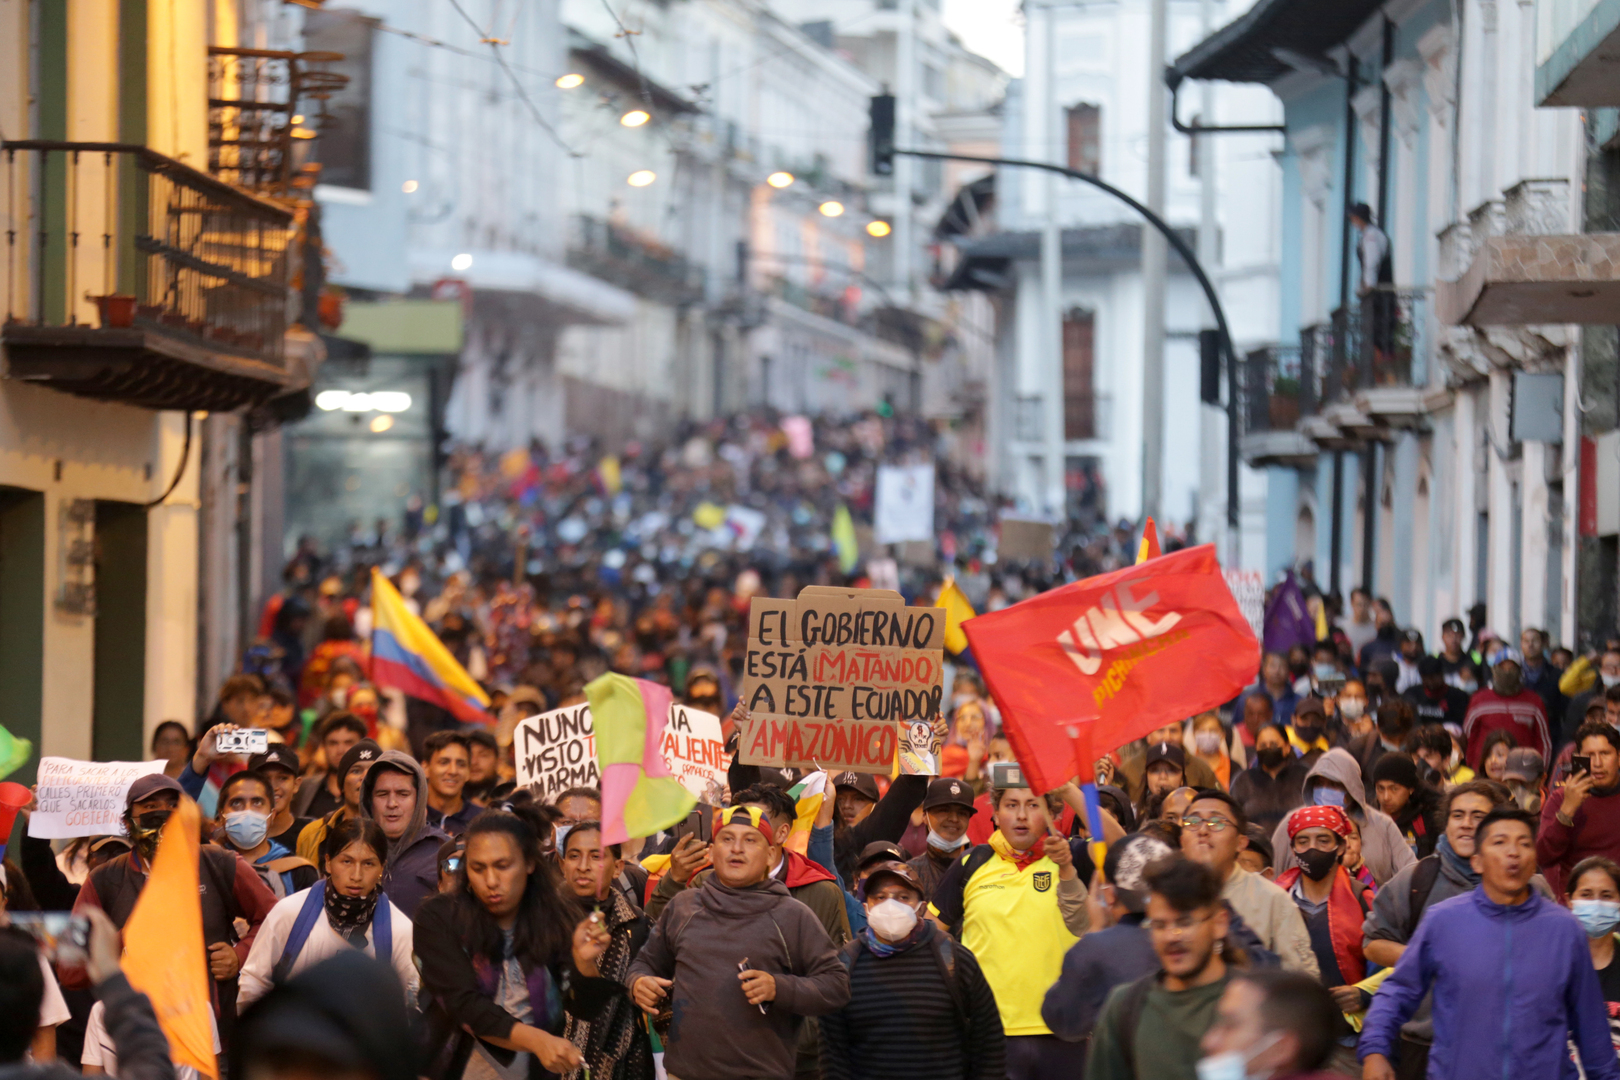 رئيس الإكوادور: الاحتجاجات تهدف إلى الإطاحة بي